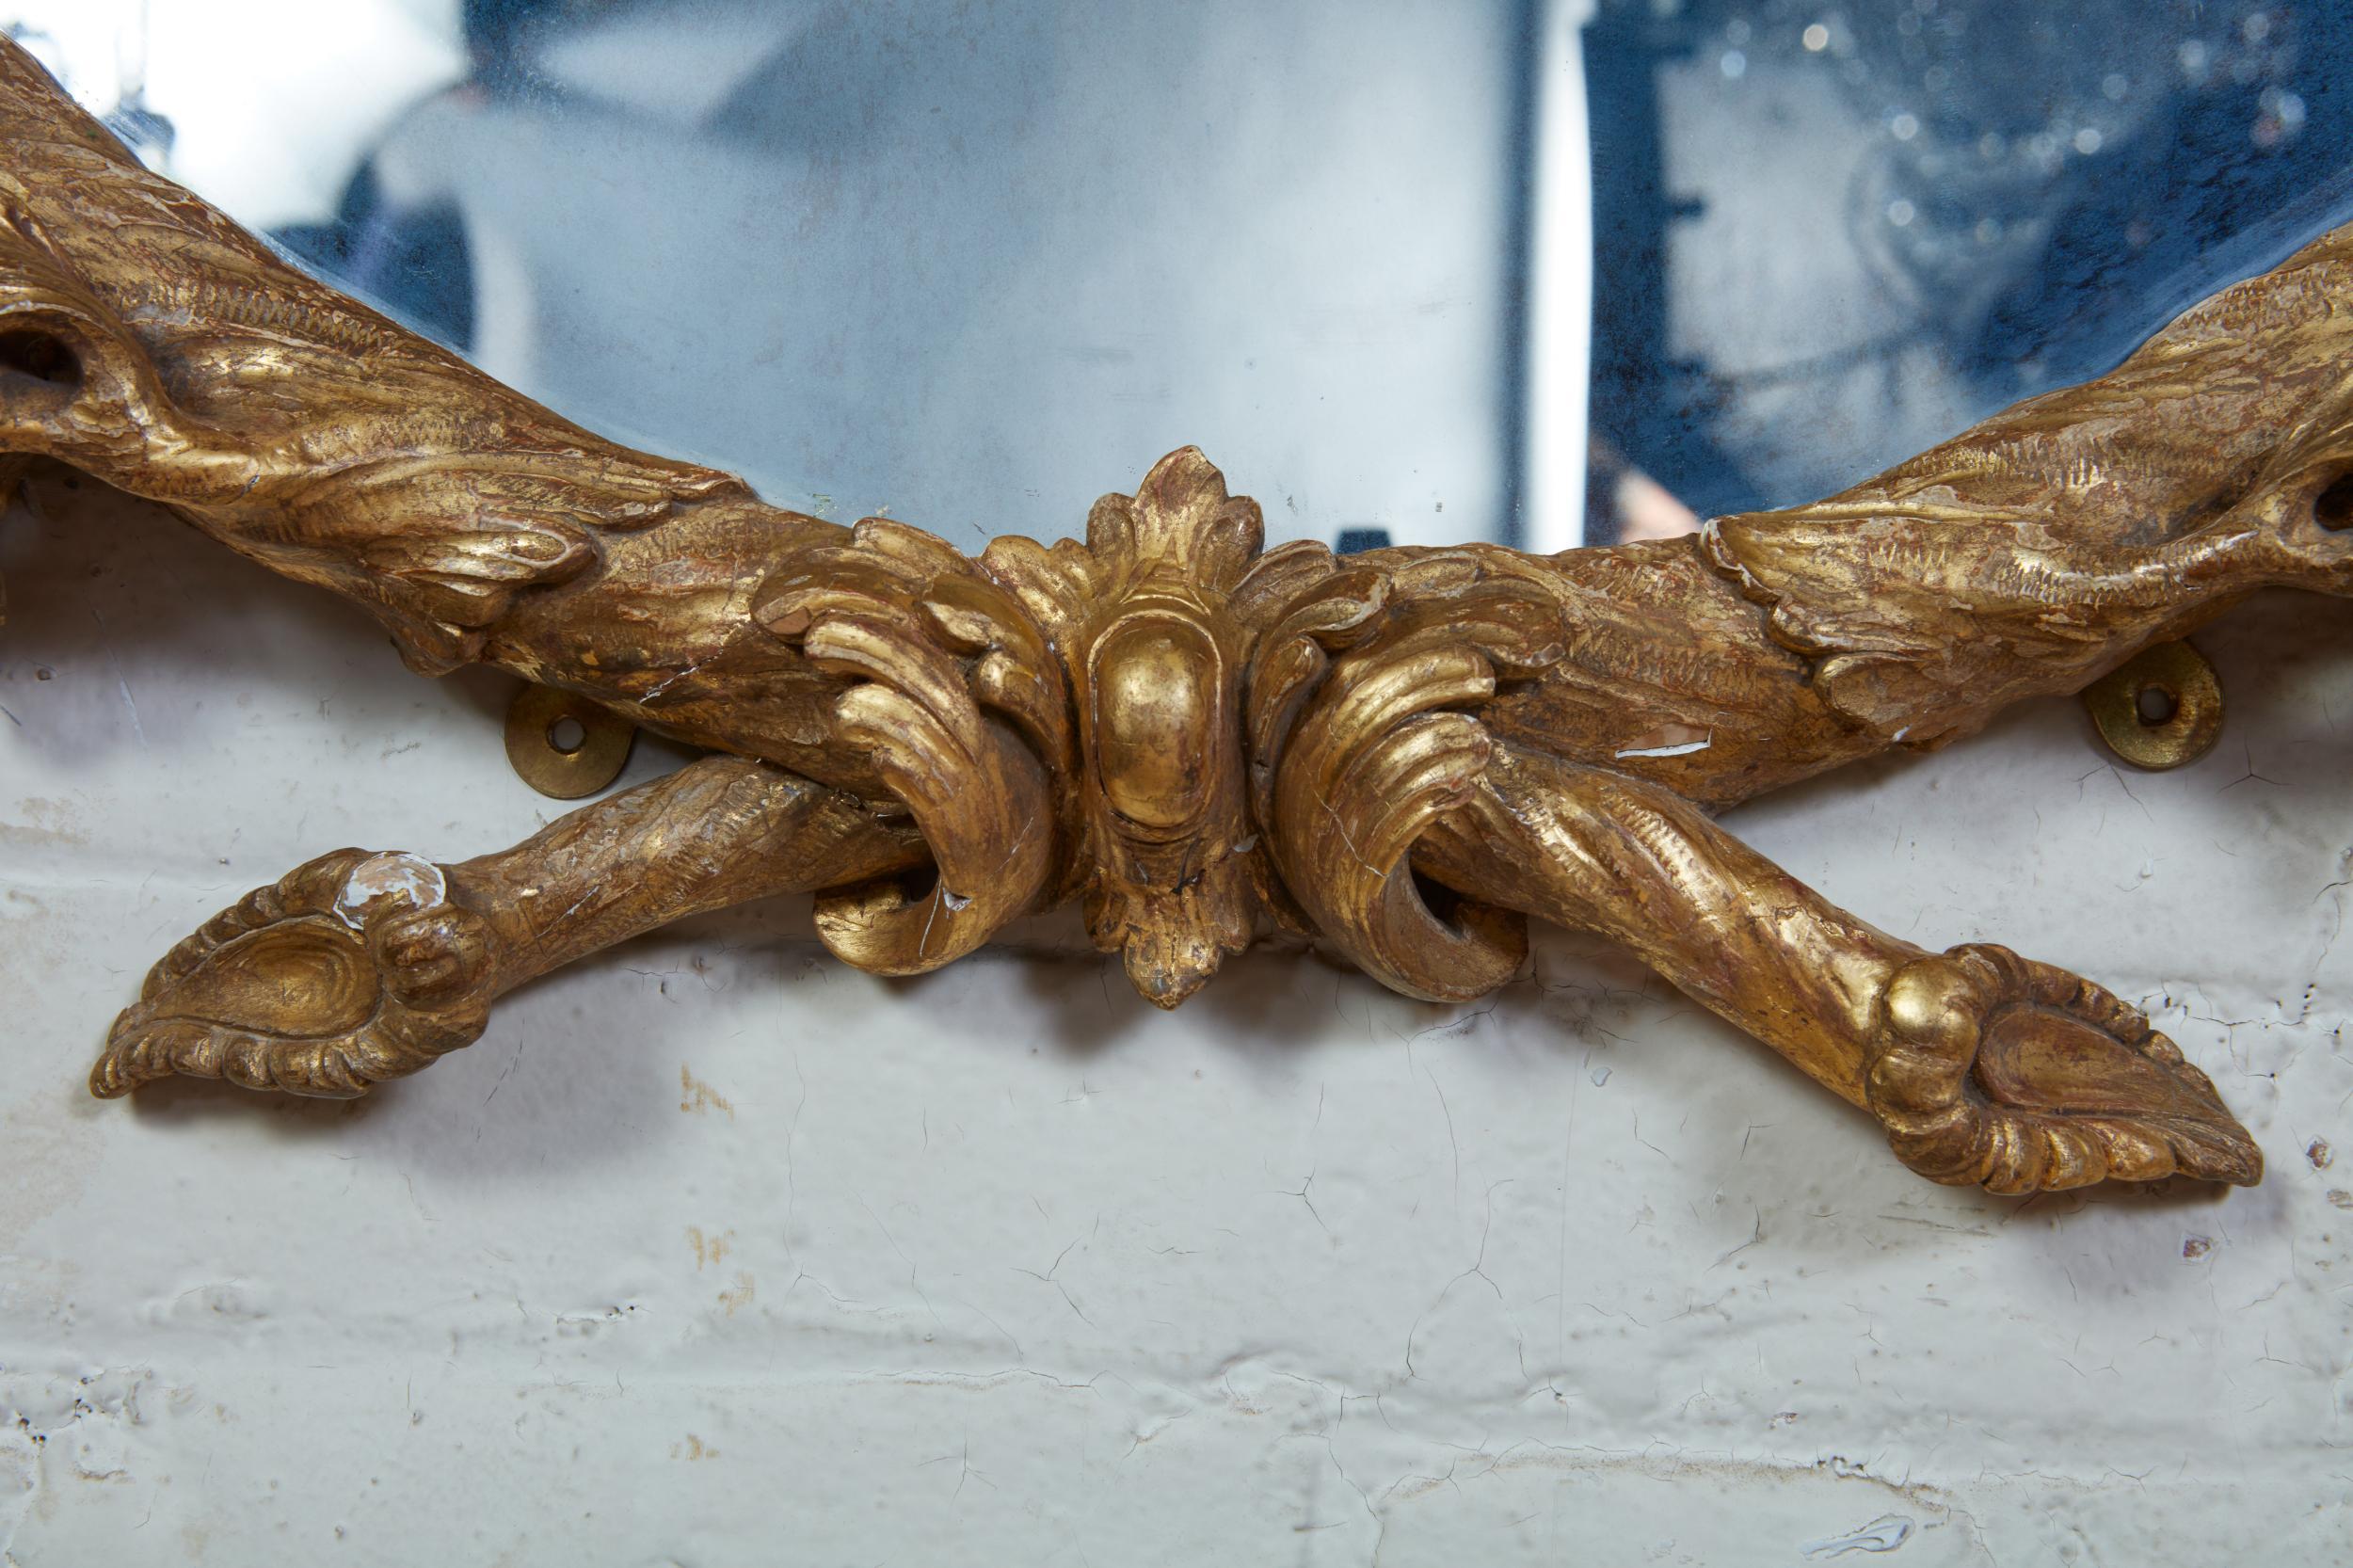 Très beau miroir George III en bois sculpté et doré à la manière de John Linnell, comprenant deux branches de chêne liées par un ruban formant une couronne, ornées de glands et de rustications finement détaillées. Les miroirs géorgiens ronds sont